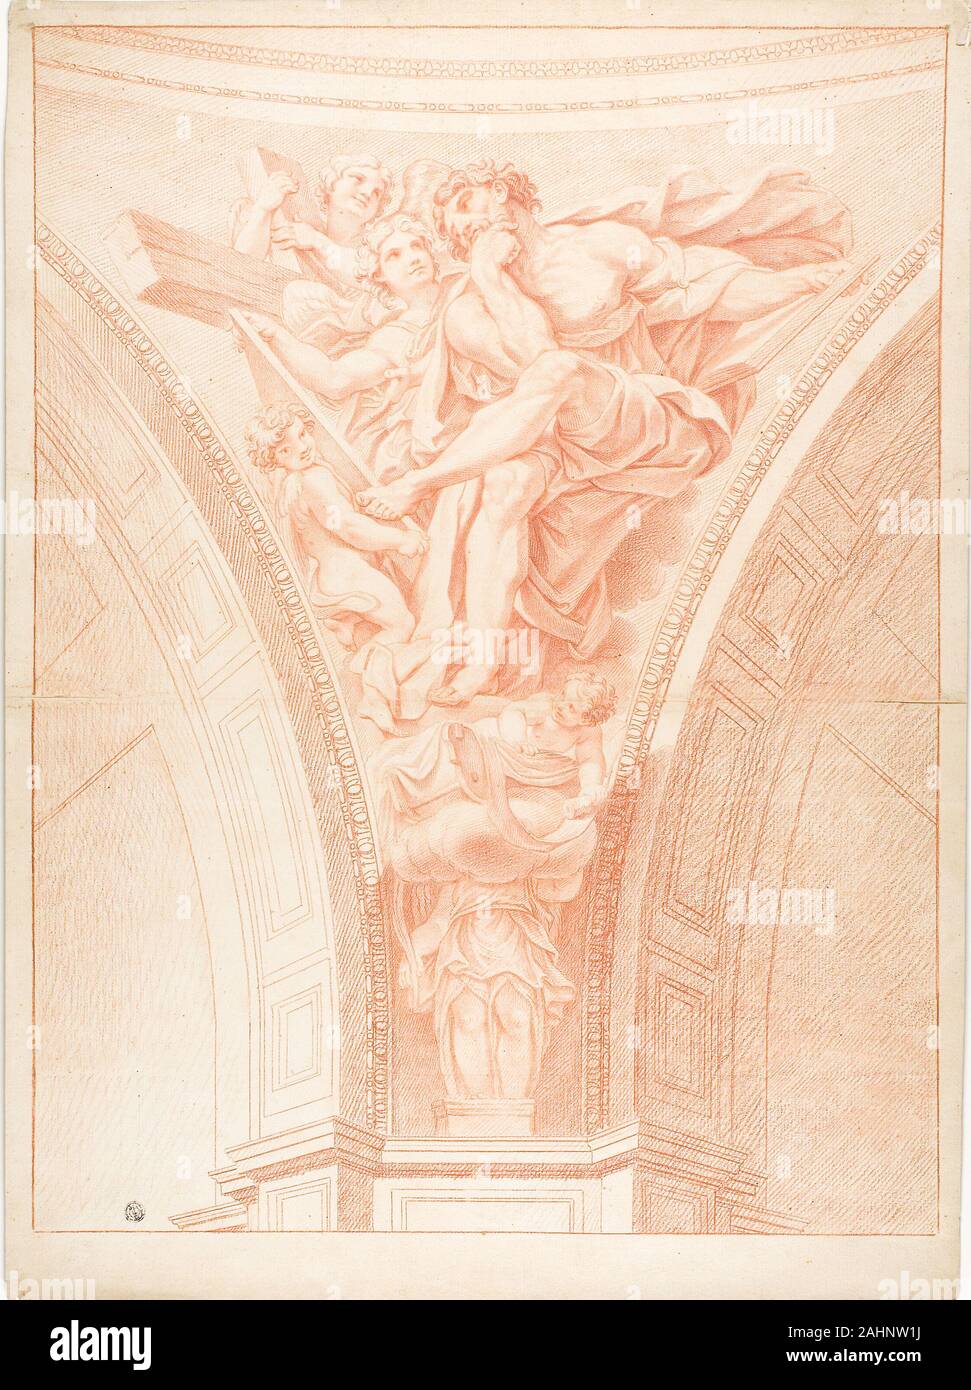 Domenichino. Saint Matthieu. 1627-1799. L'Italie. Craie rouge sur papier vergé chamois, fixées sur papier vergé crème Banque D'Images